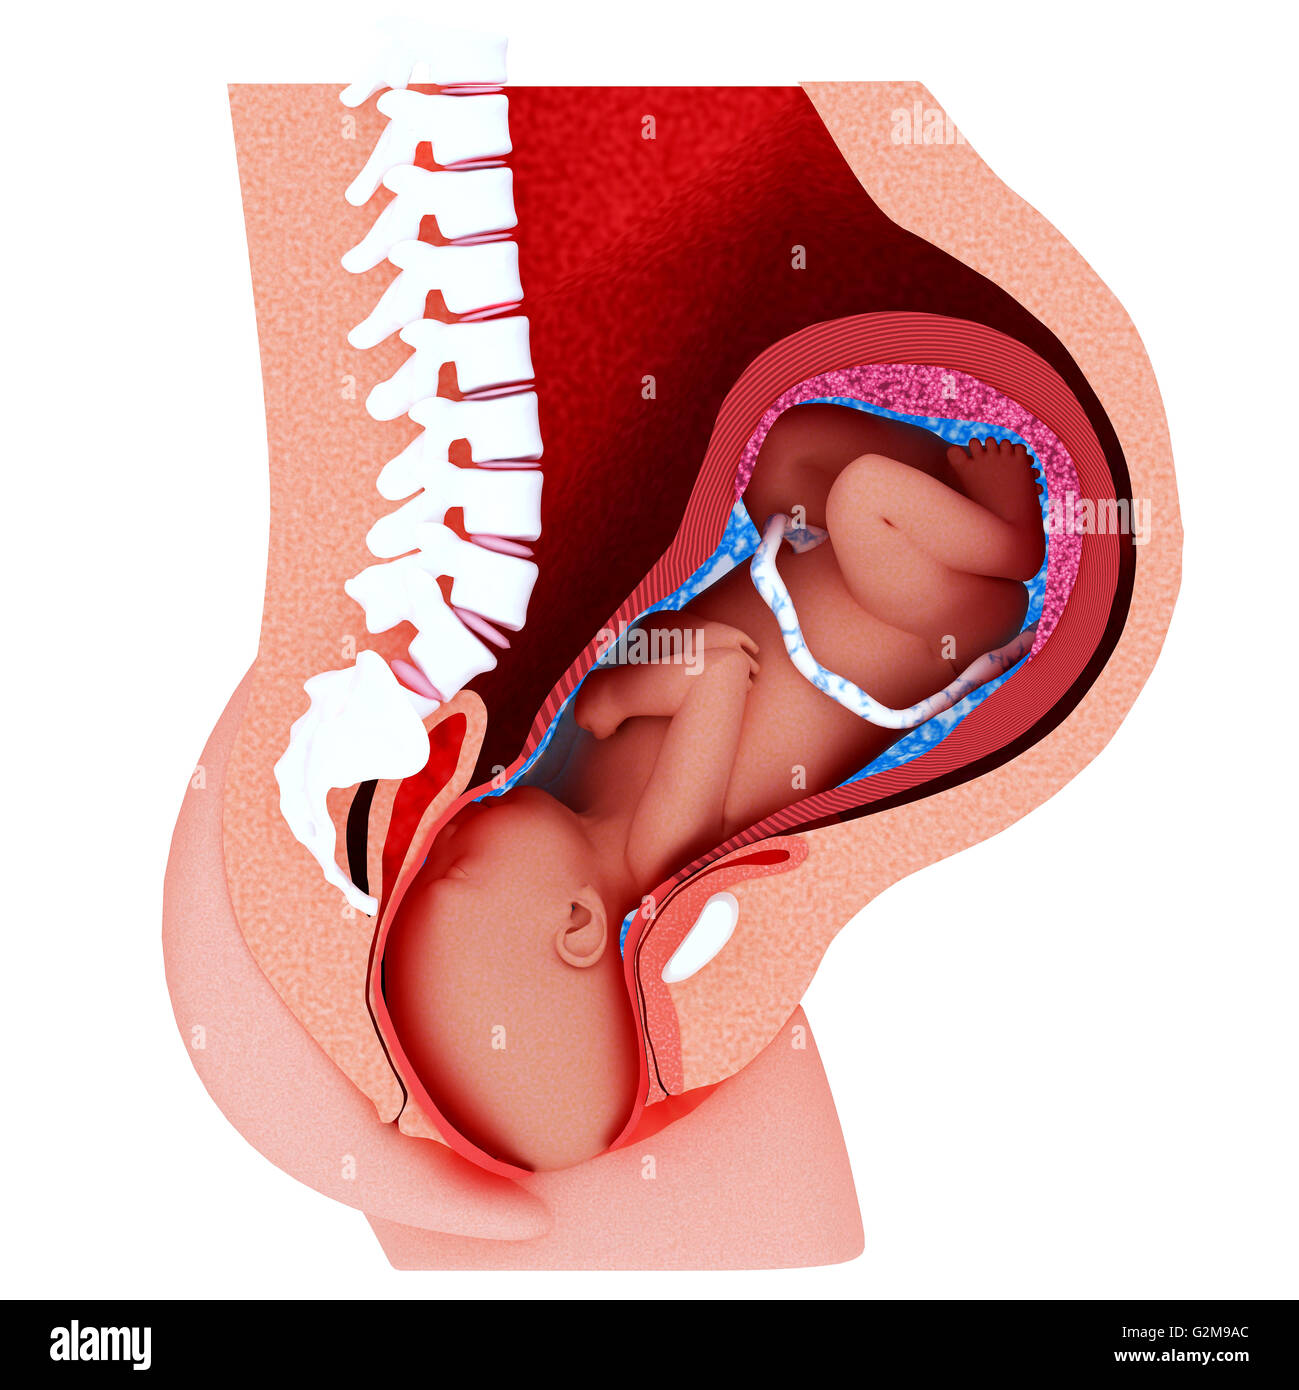 Querschnitt der Gebärmutter mit Fötus vertrieben Stockfoto